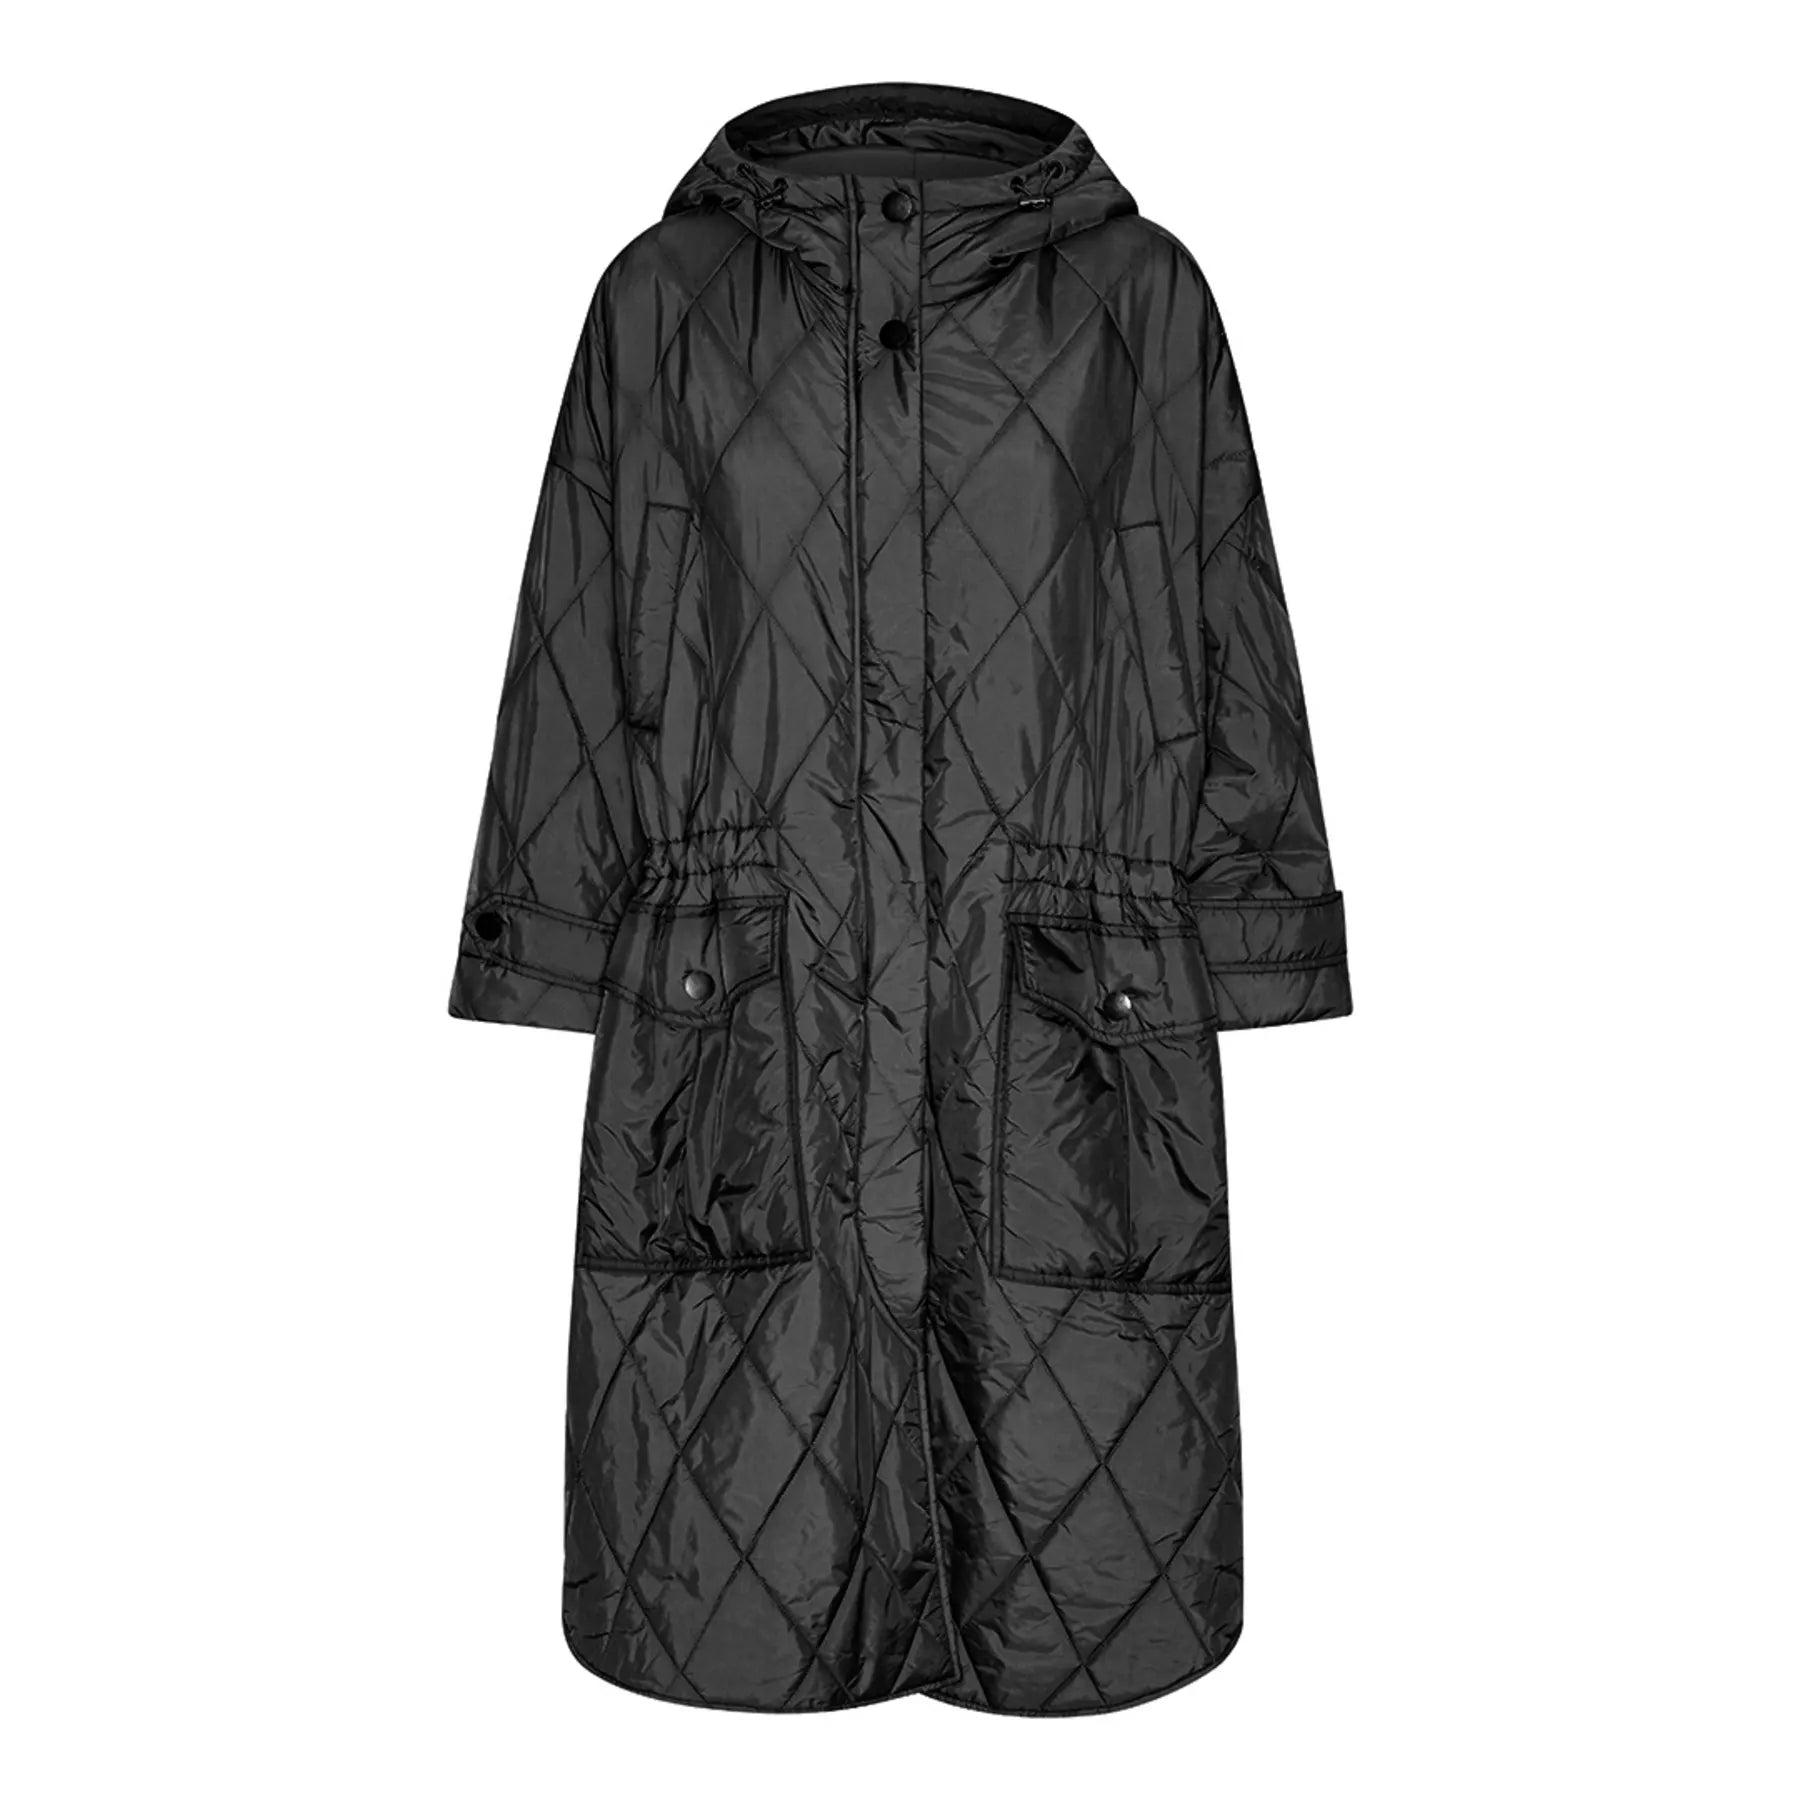 Nevada Poncho Coat in Black